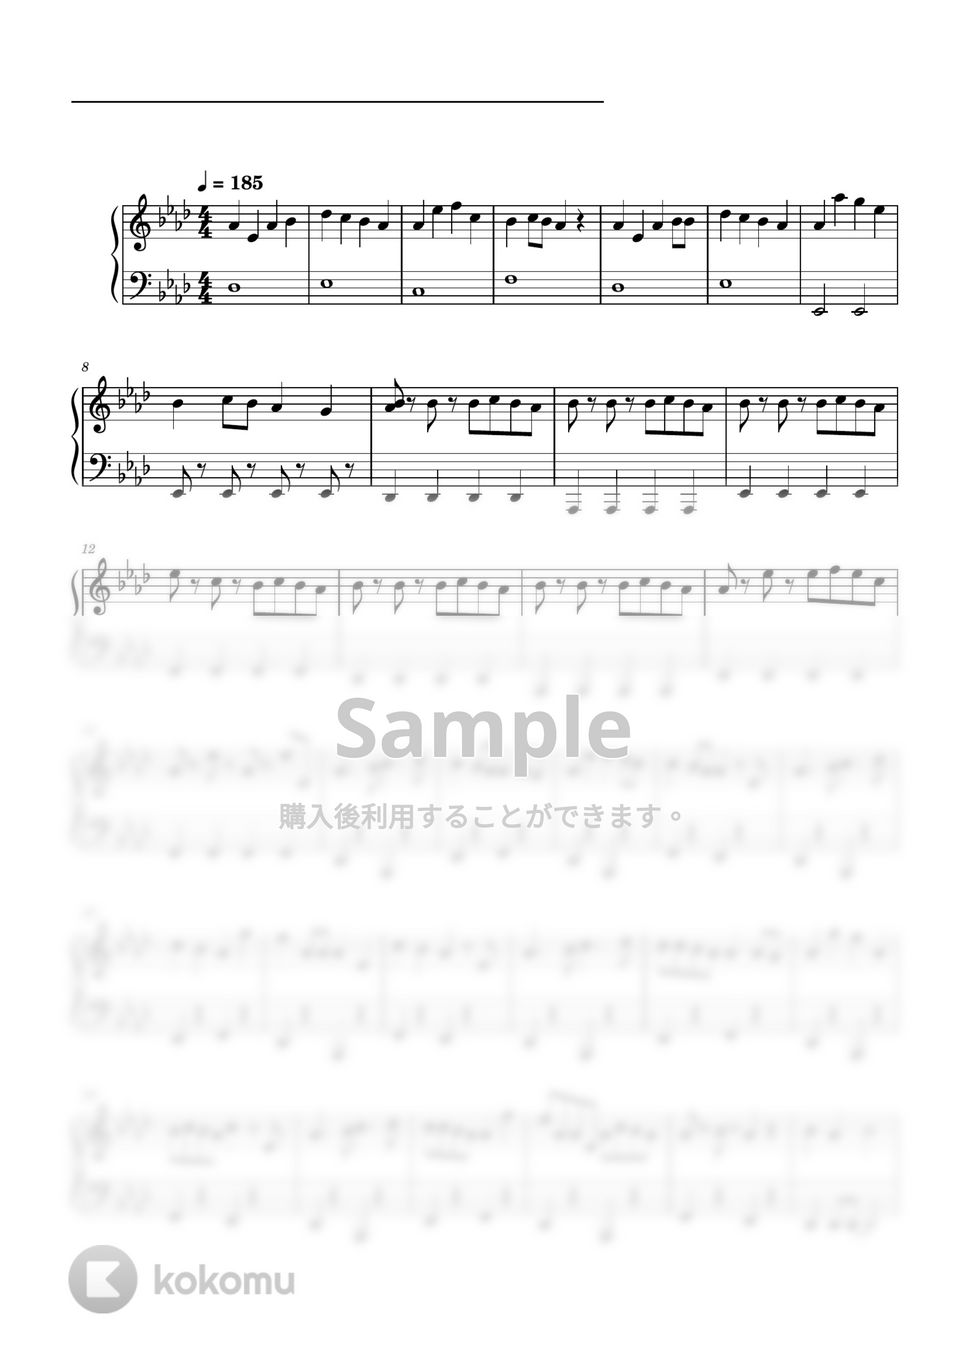 すとぷり - スキスキ星人 (ピアノソロ譜) by 萌や氏